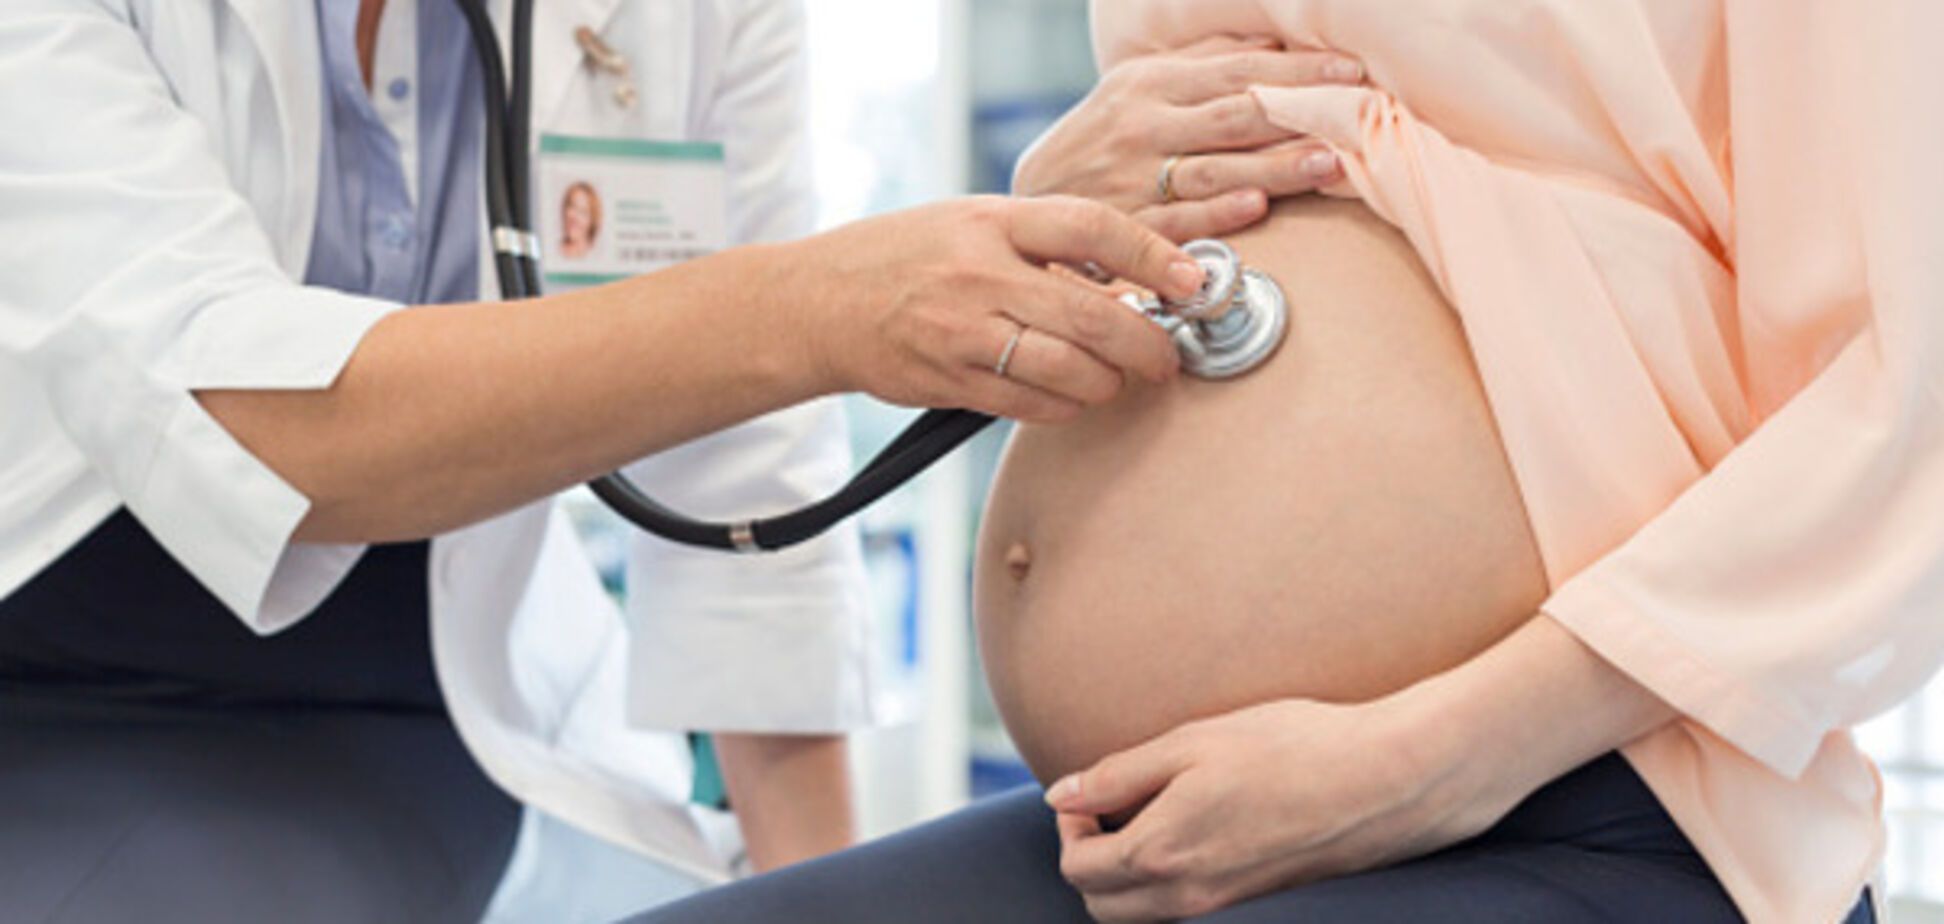 Топ-5 причин потери веса во время беременности